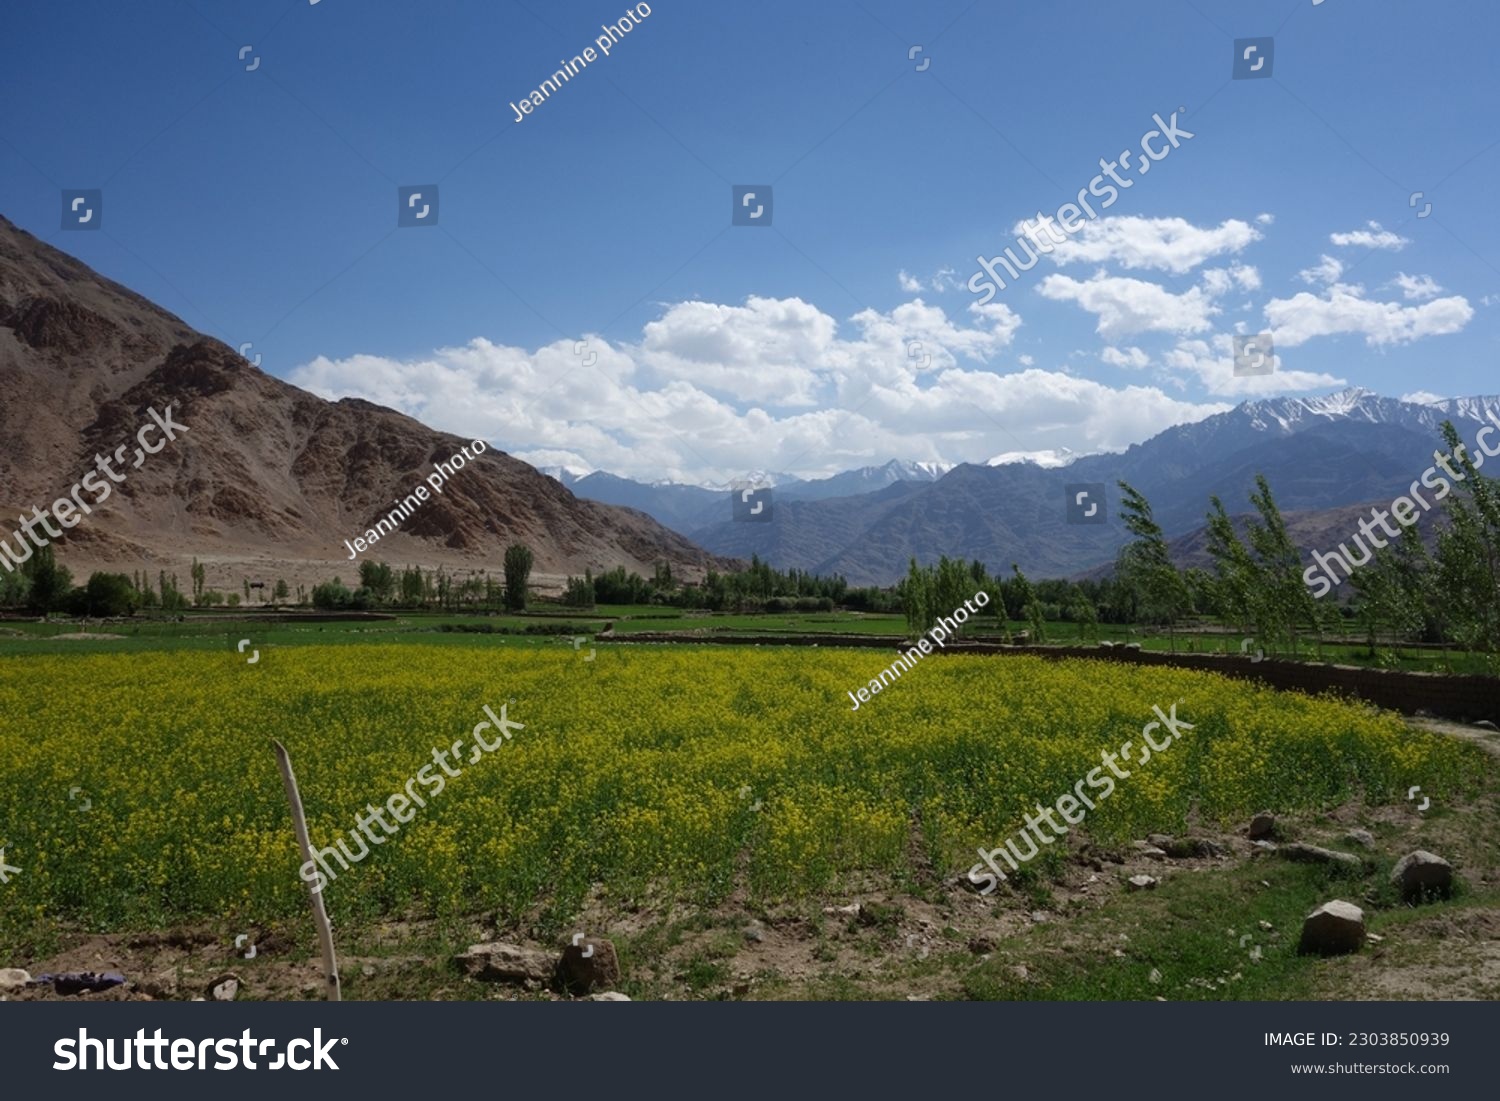 No man's land in Ladakh #2303850939